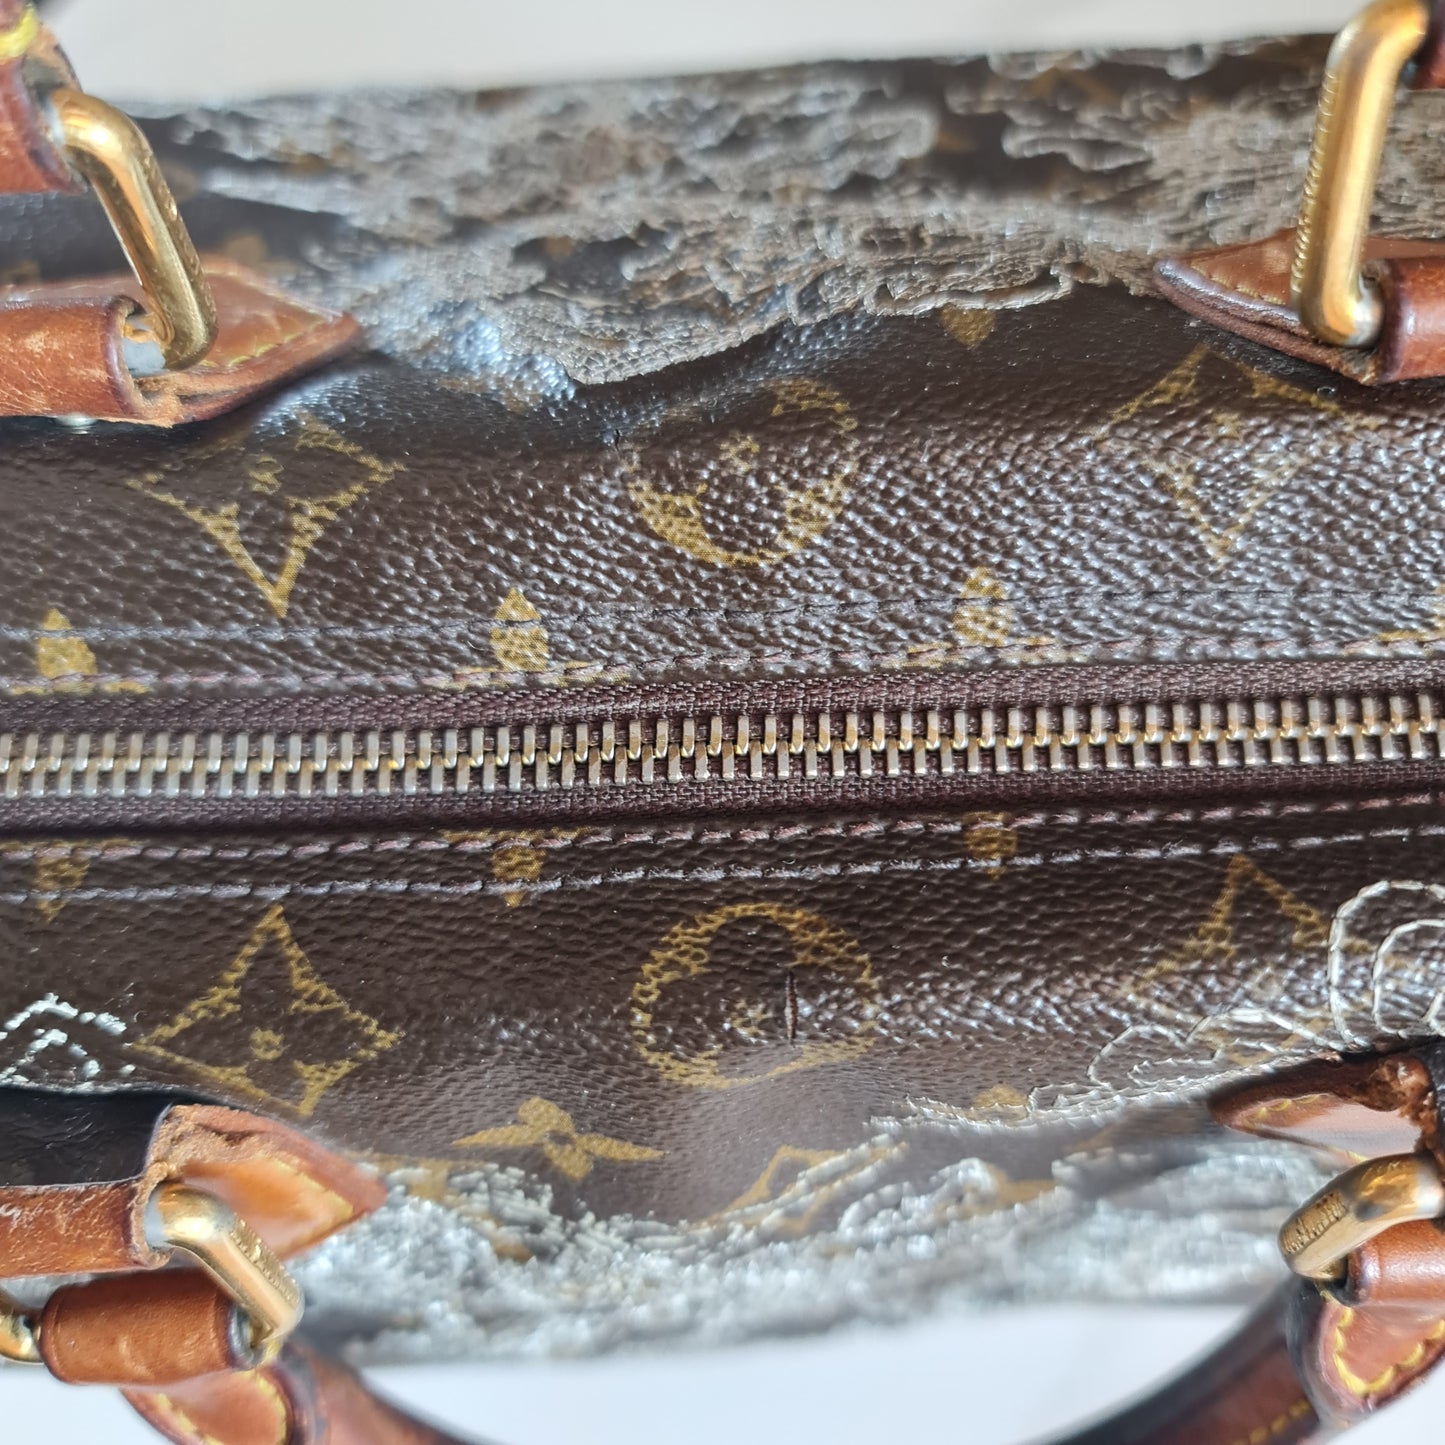 Louis Vuitton Dentelle Silver Speedy Bag